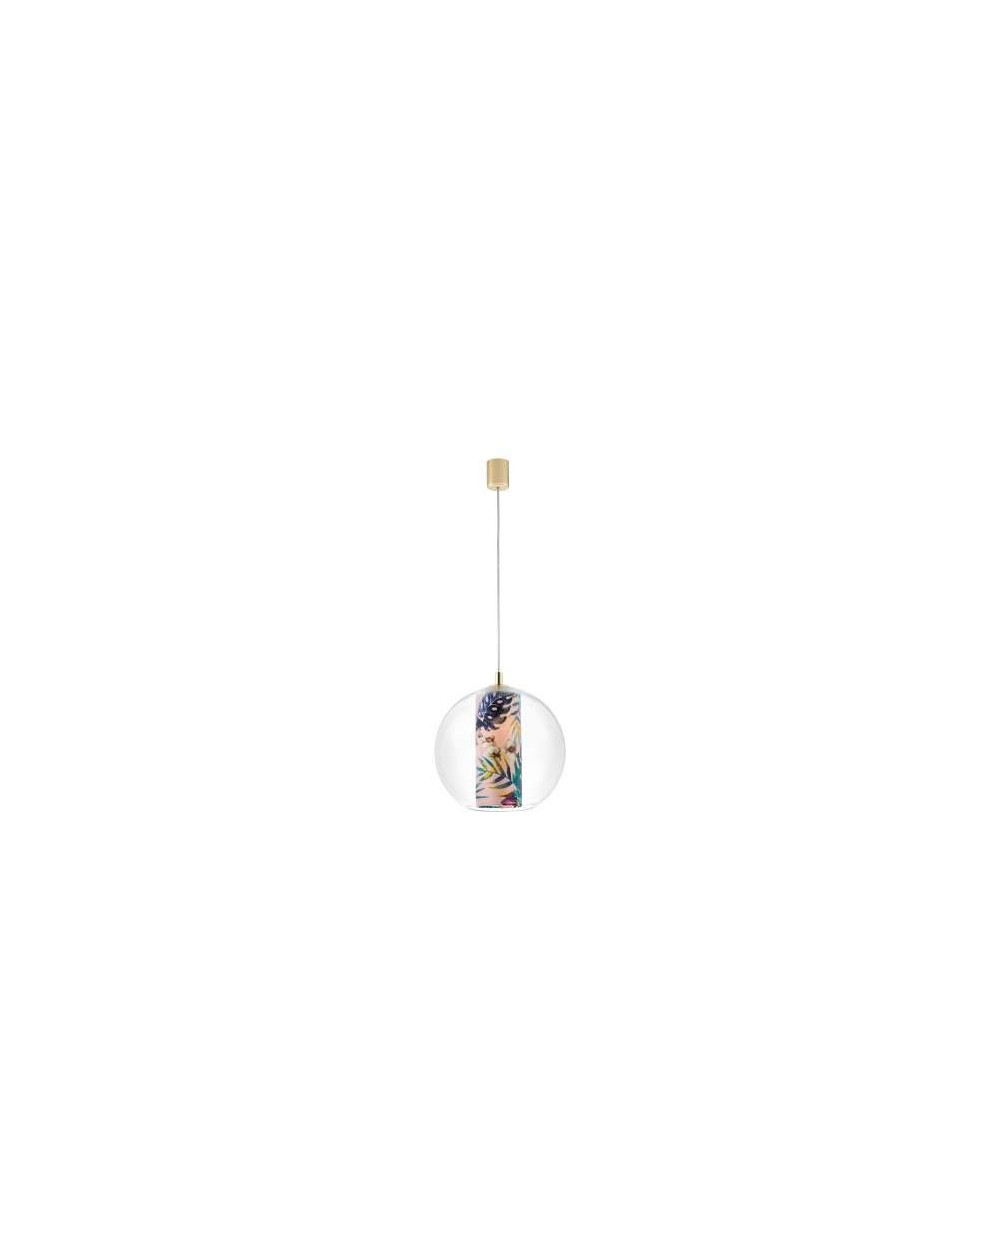 FERIA M lampa wisząca szklana kula z kolorowym wnętrzem w kształcie tuby - Kaspa